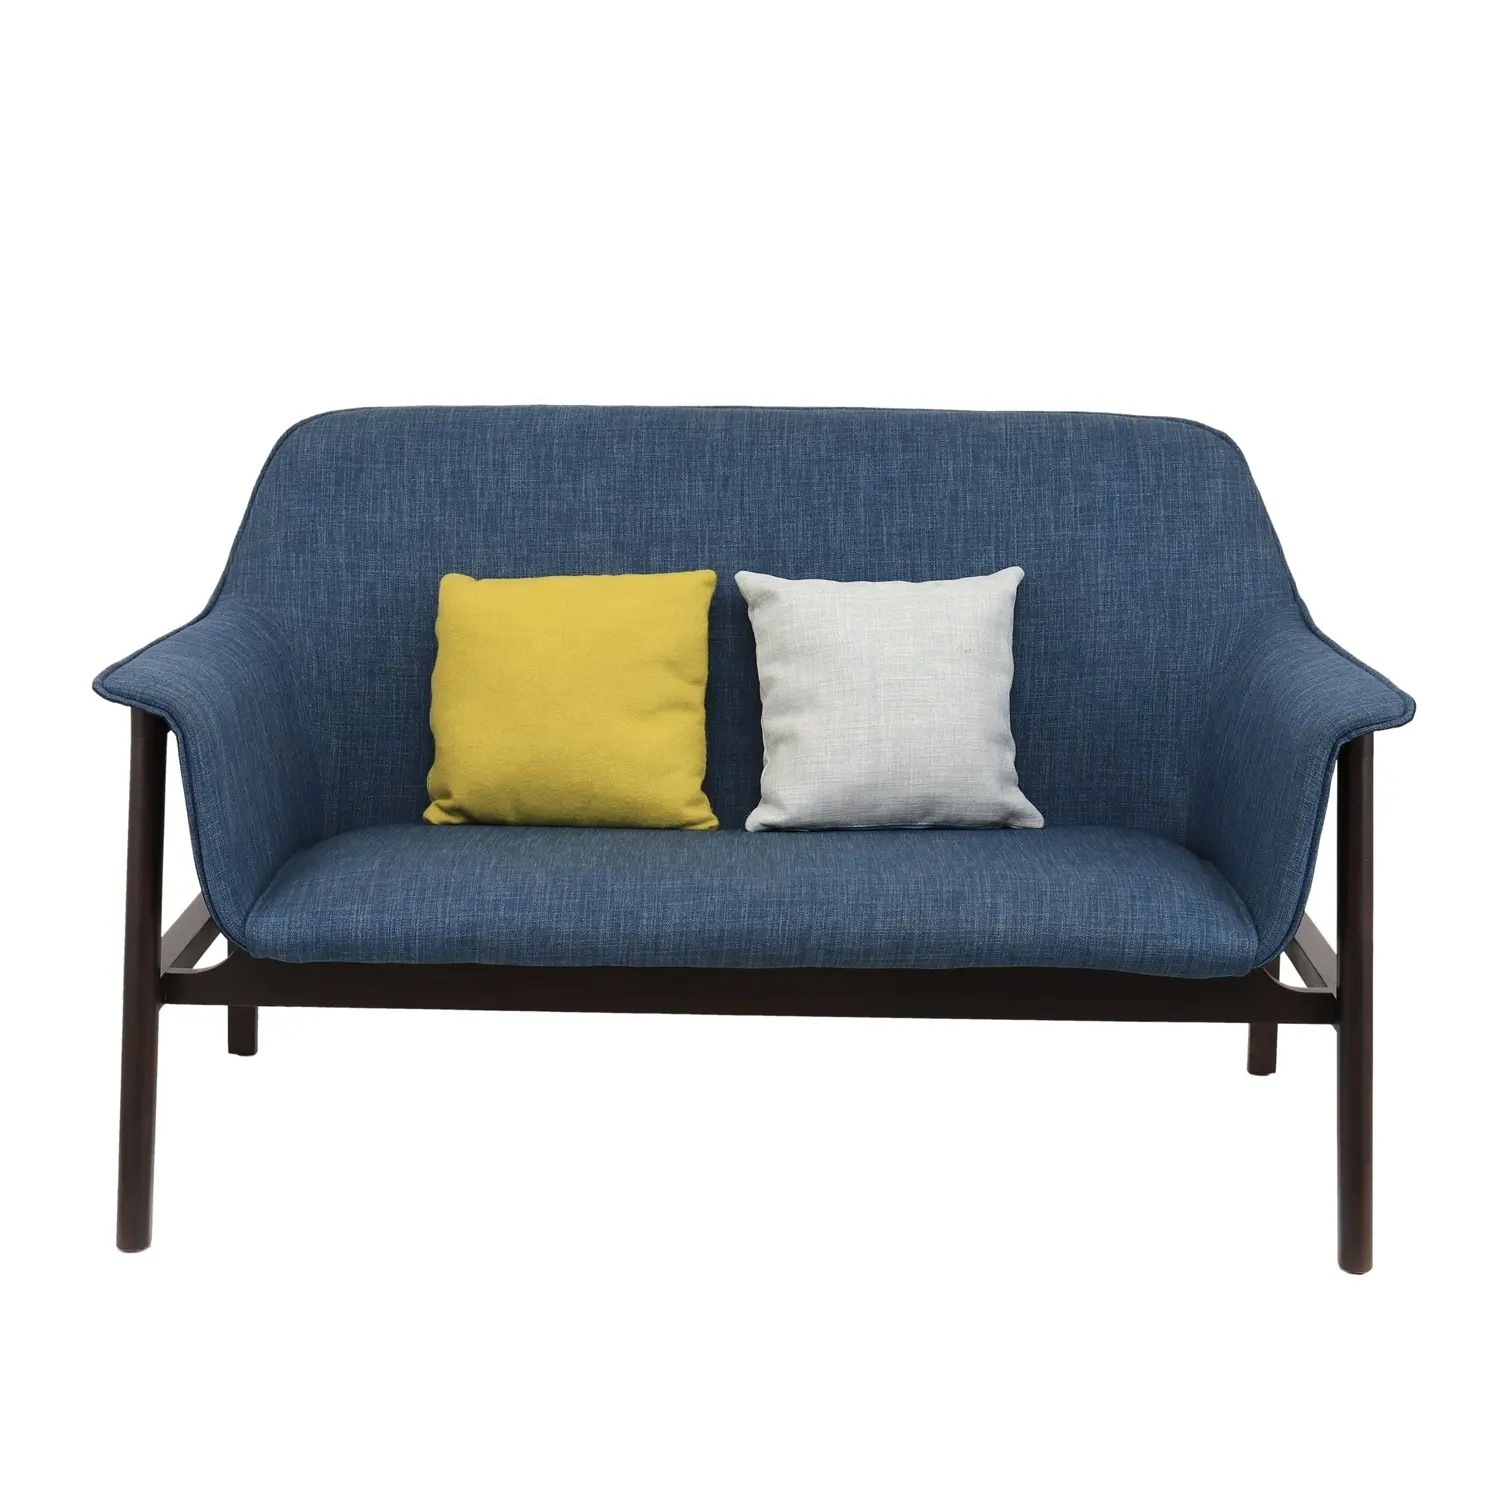 Modern lüks kumaş setleri oturma odası mobilya kanepeler ahşap bacaklar ev mobilya